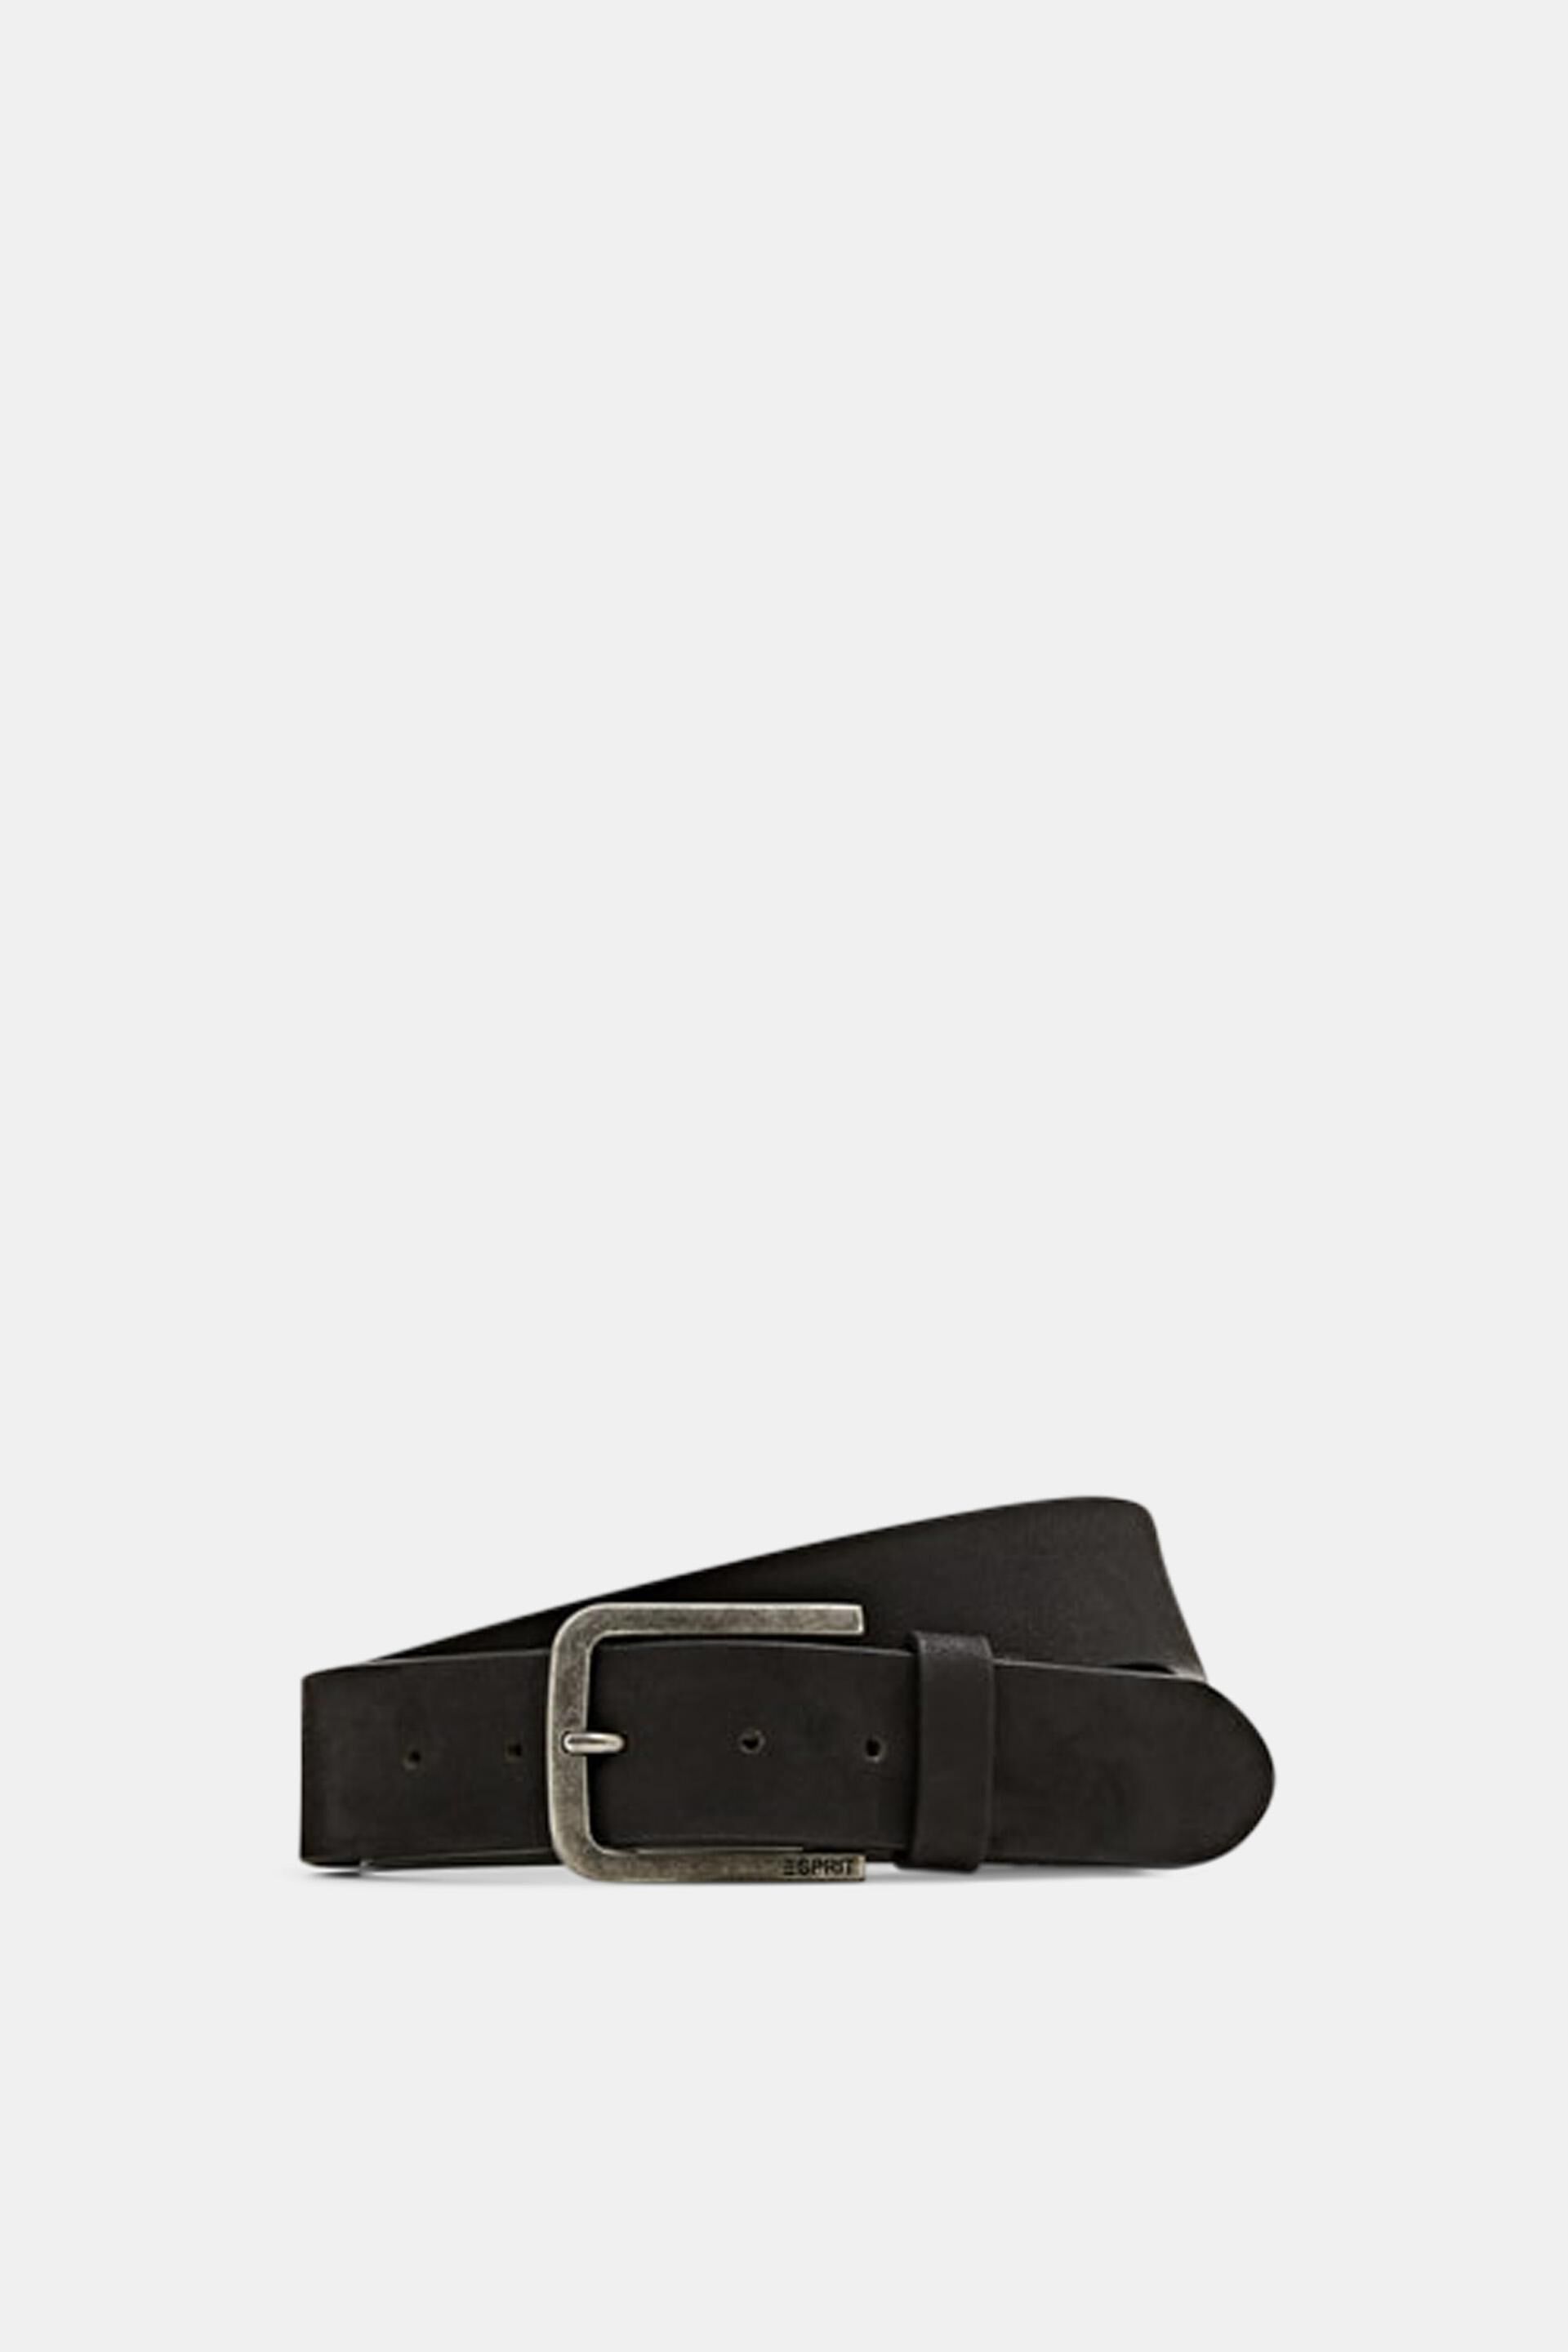 Esprit leather Nubuck belt